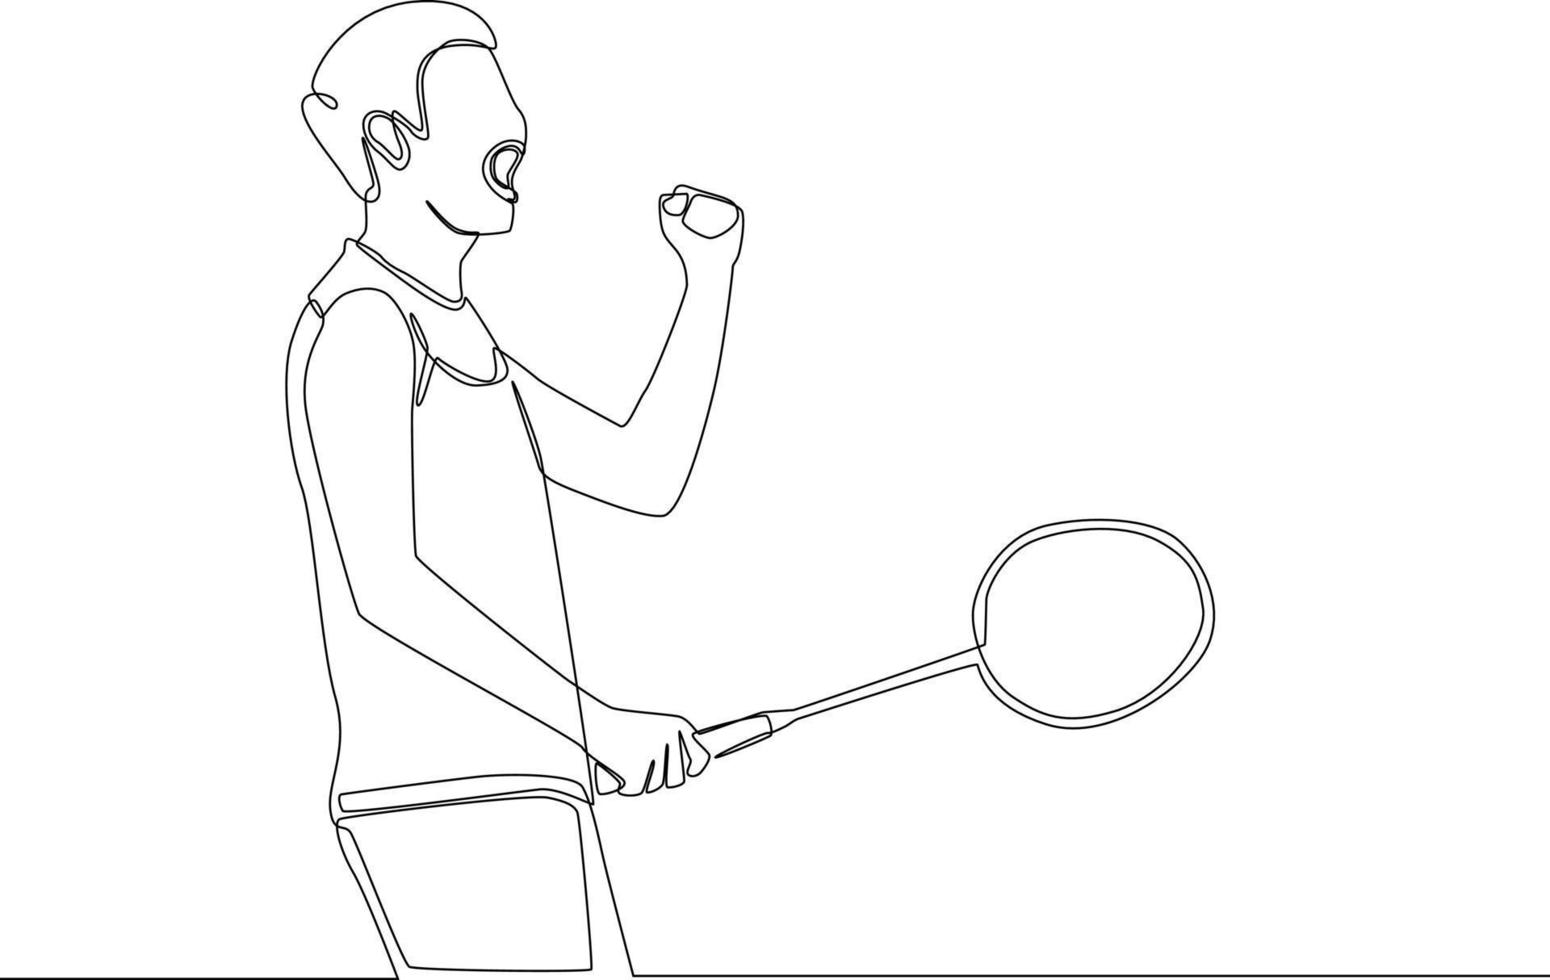 un giovane disegnando una linea continua dopo aver giocato a badminton in piedi come vincitore. illustrazione grafica vettoriale di disegno a linea singola.